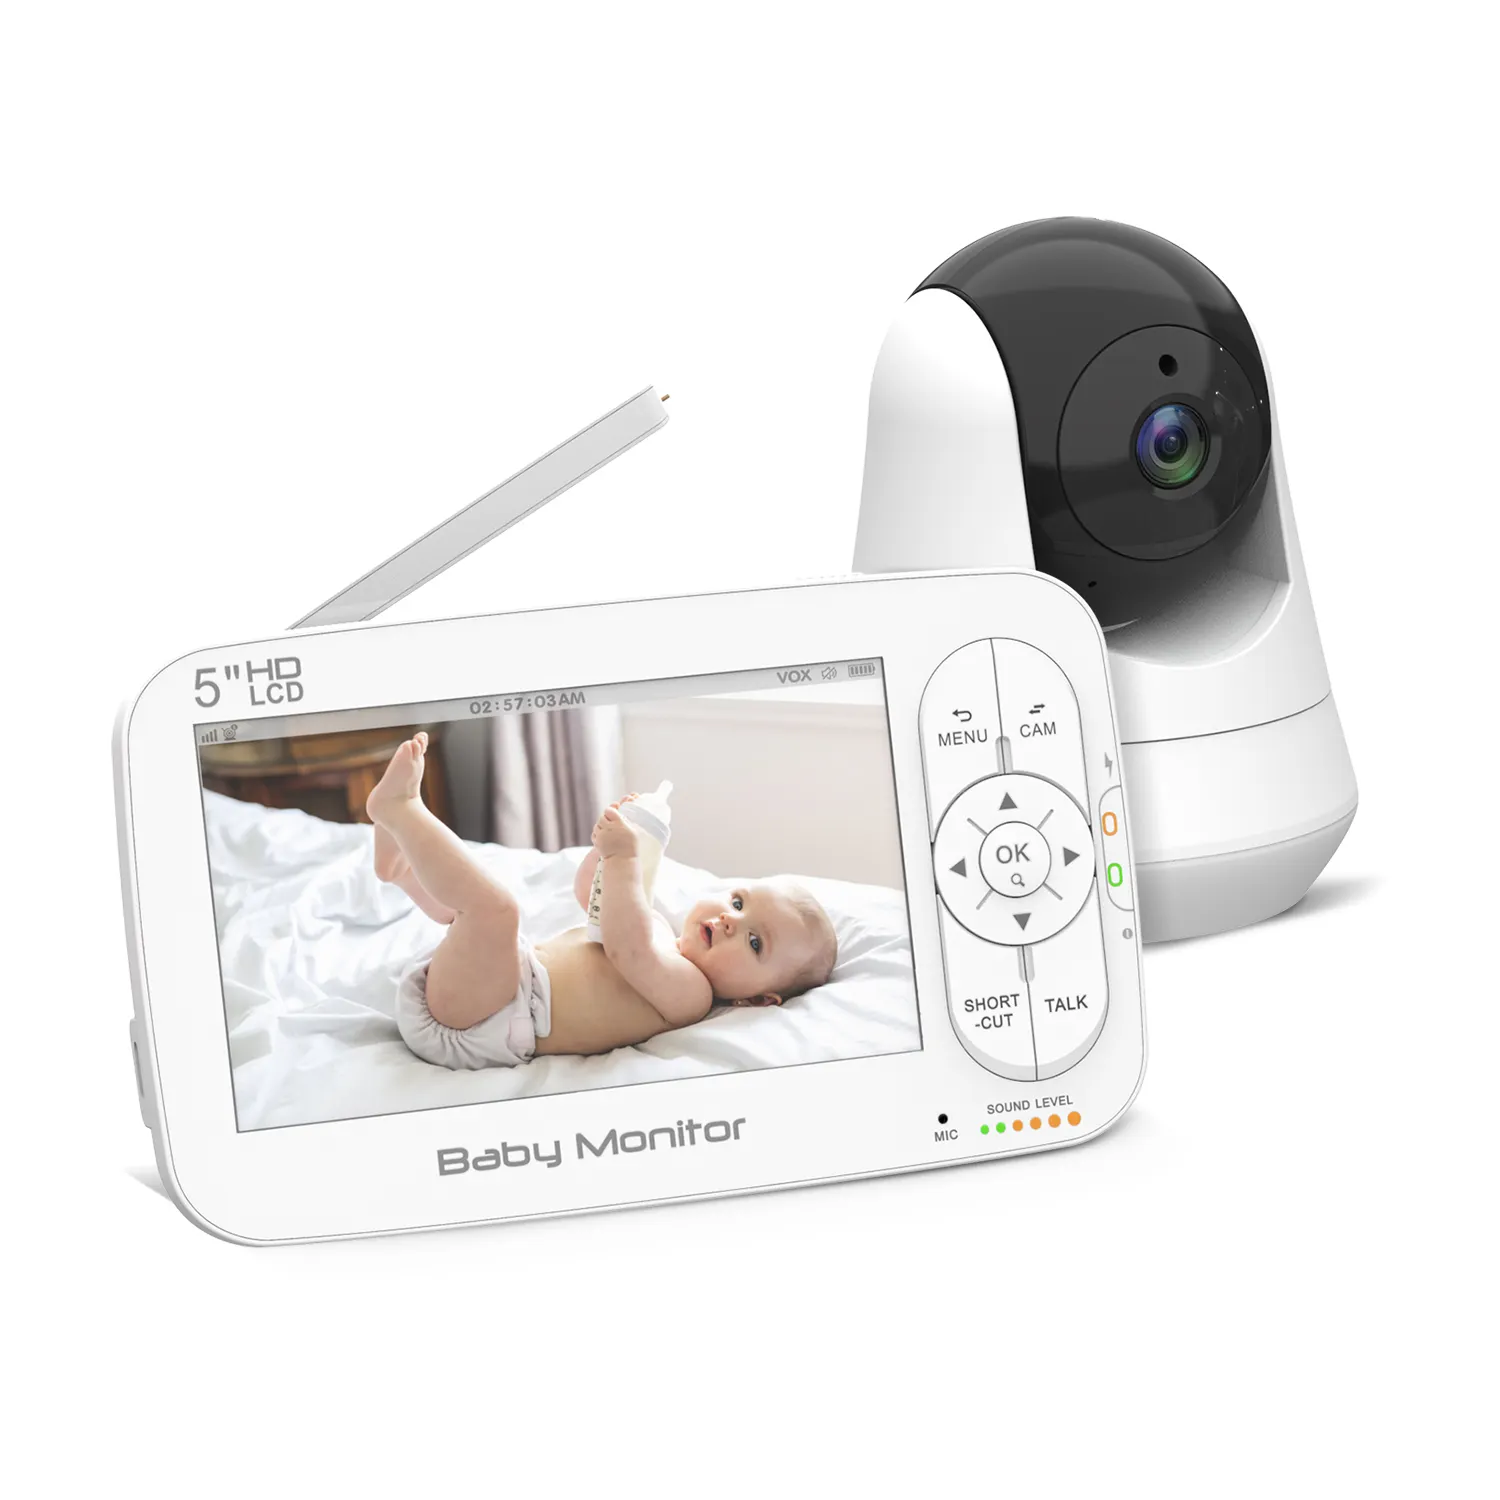 स्पष्ट रात दृष्टि ध्वनि तापमान का पता लगाने के लिए विस्तार डिजिटल वीडियो बेबी कैमरा वायरलेस 5 इंच हैंडहेल्ड मॉनिटर के साथ